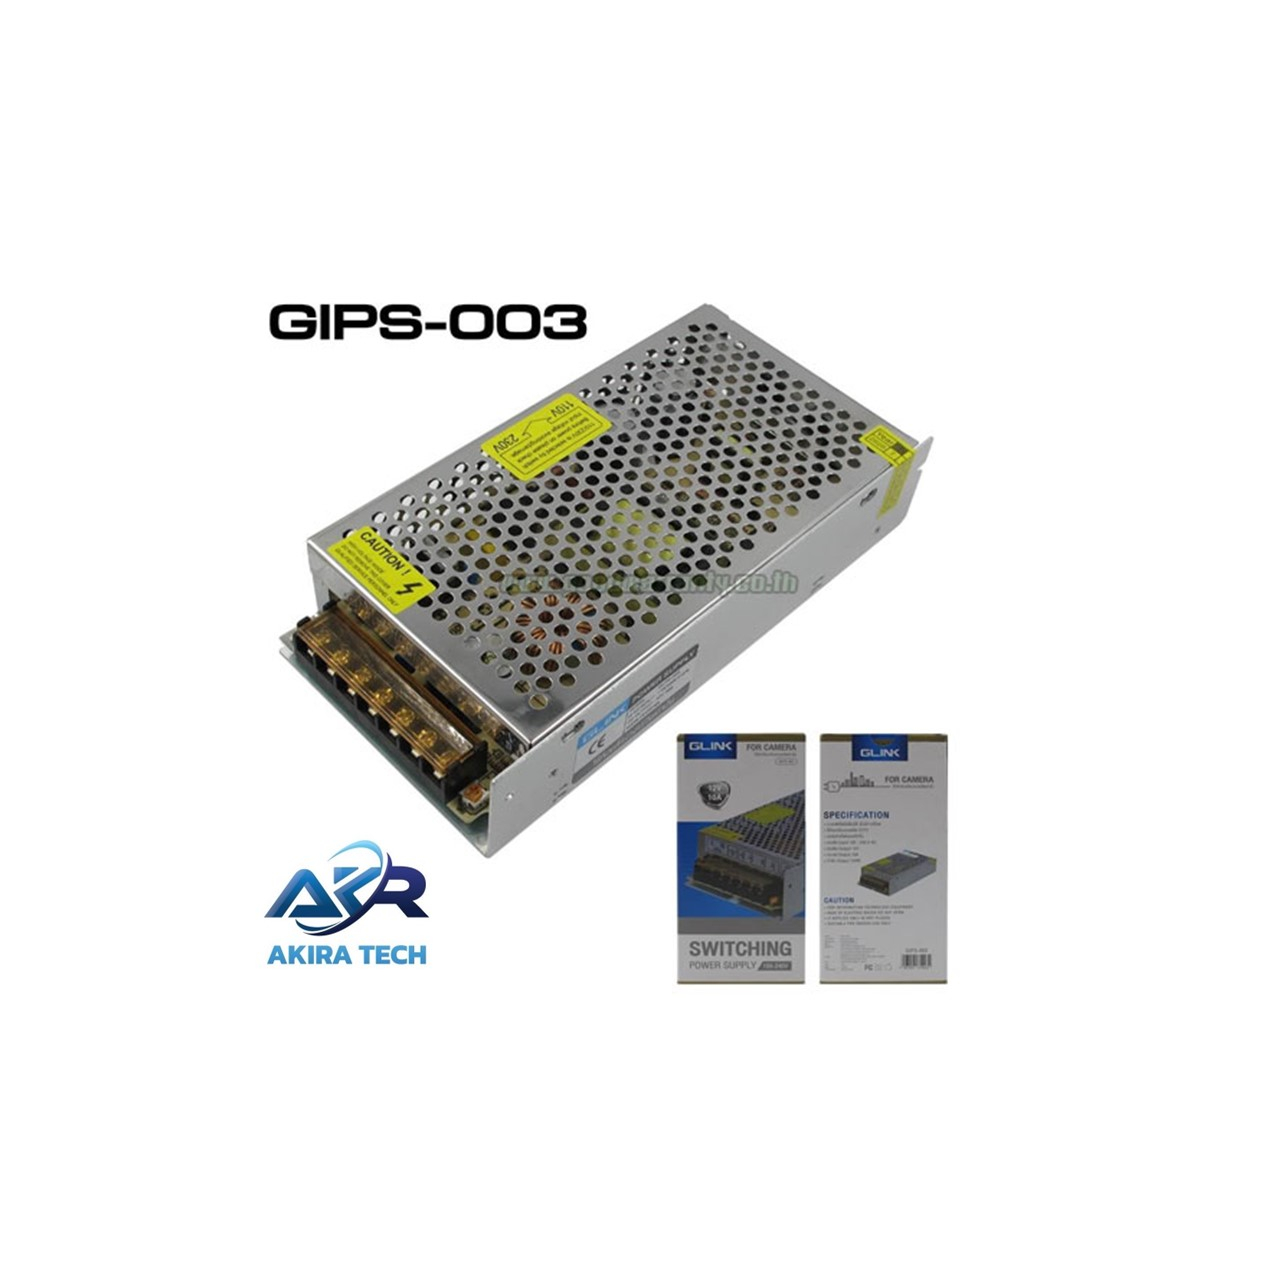 glink-gips003-power-supply-12v-10a-รุ่น-gips-003-ใช้สำหรับกล้องวงจรปิดเท่านั้น